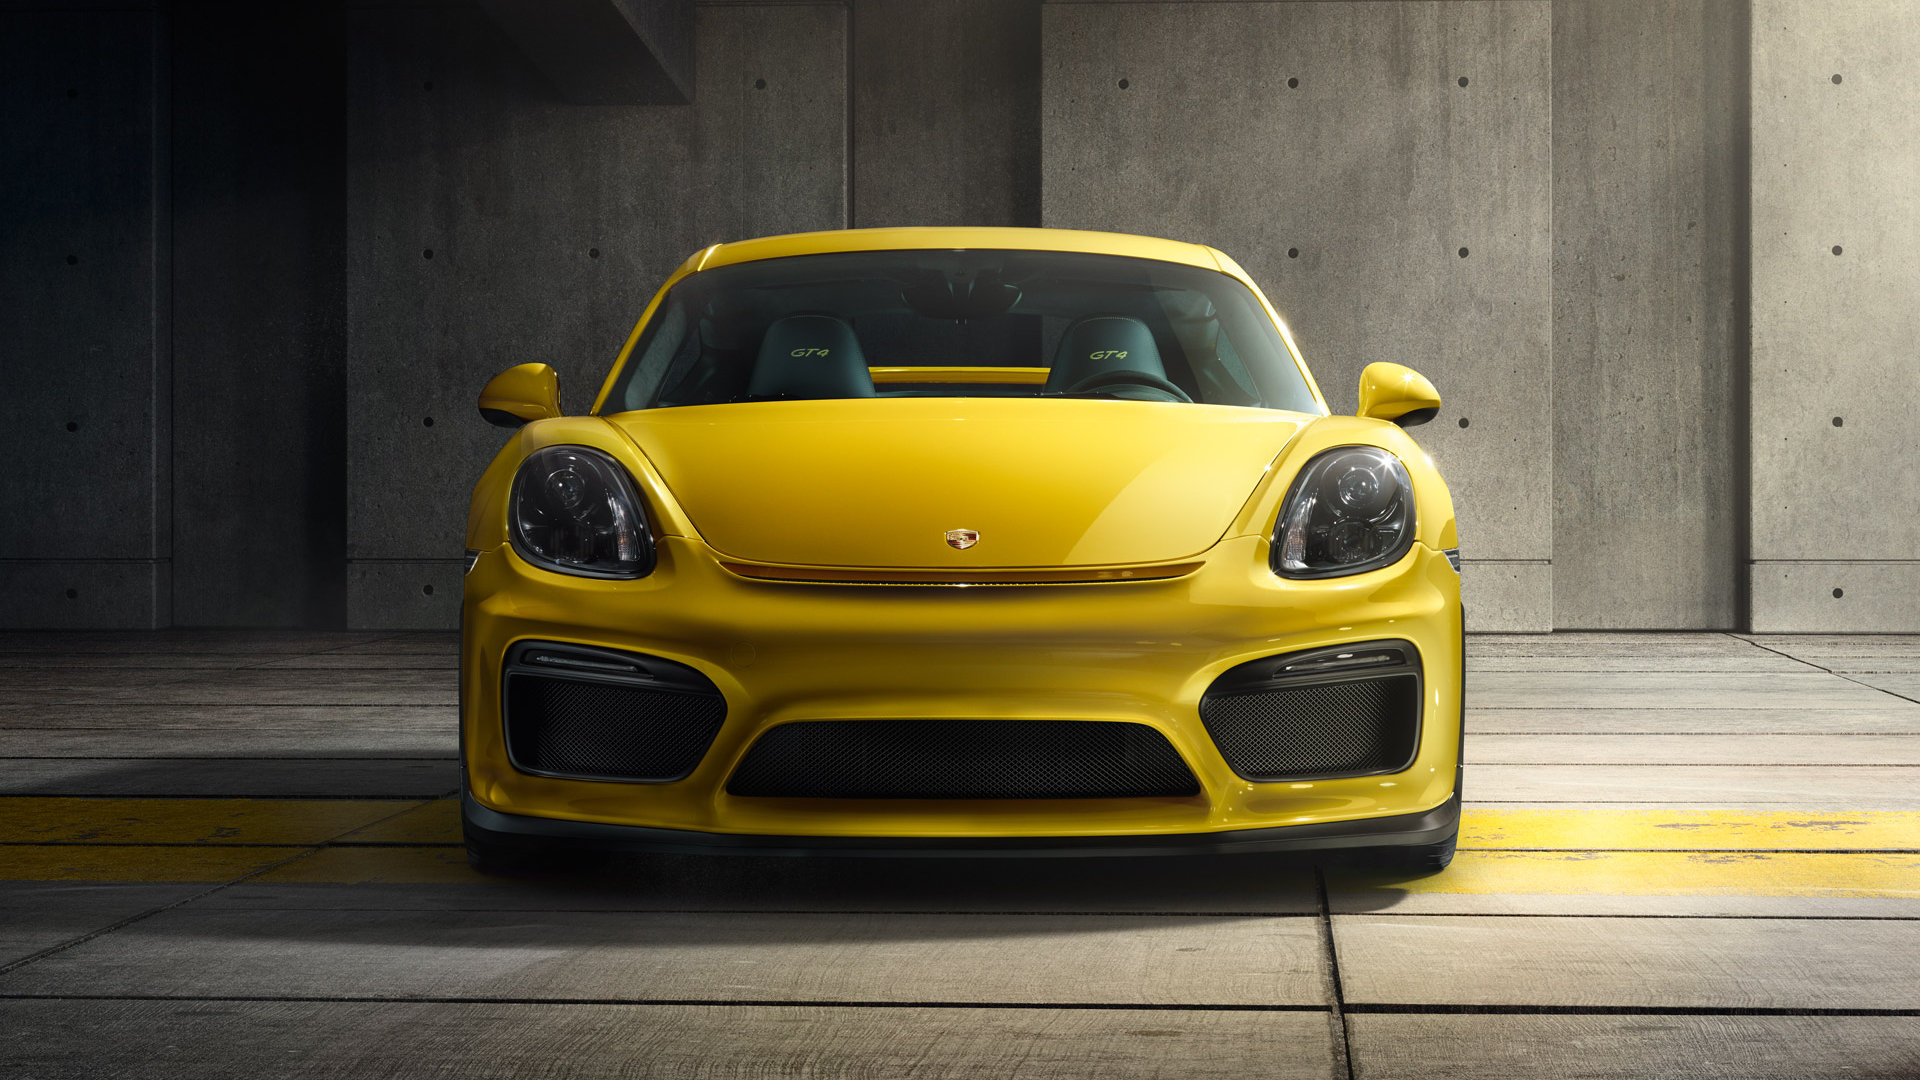 Best Porsche Cayman GT4 background ID:274576 for High Resolution full hd desktop